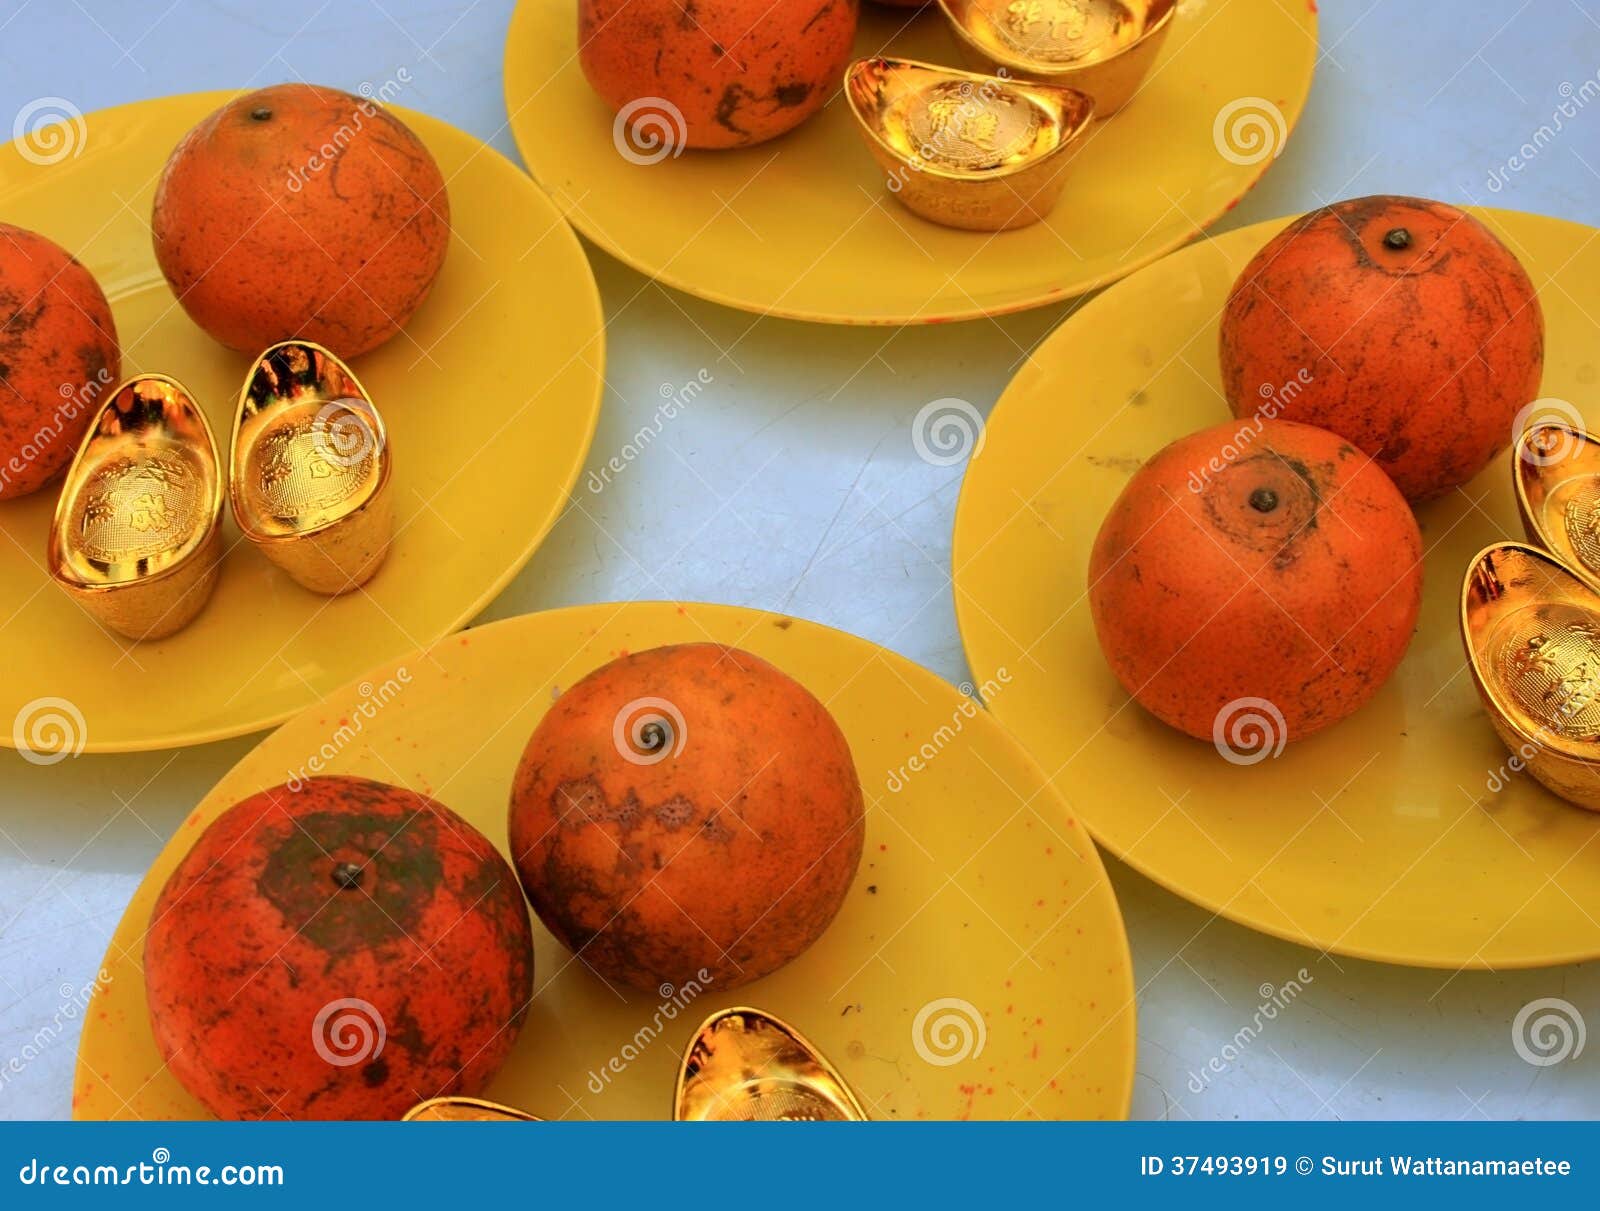 Oranges and gold ingot stock image. Image of background - 37493919